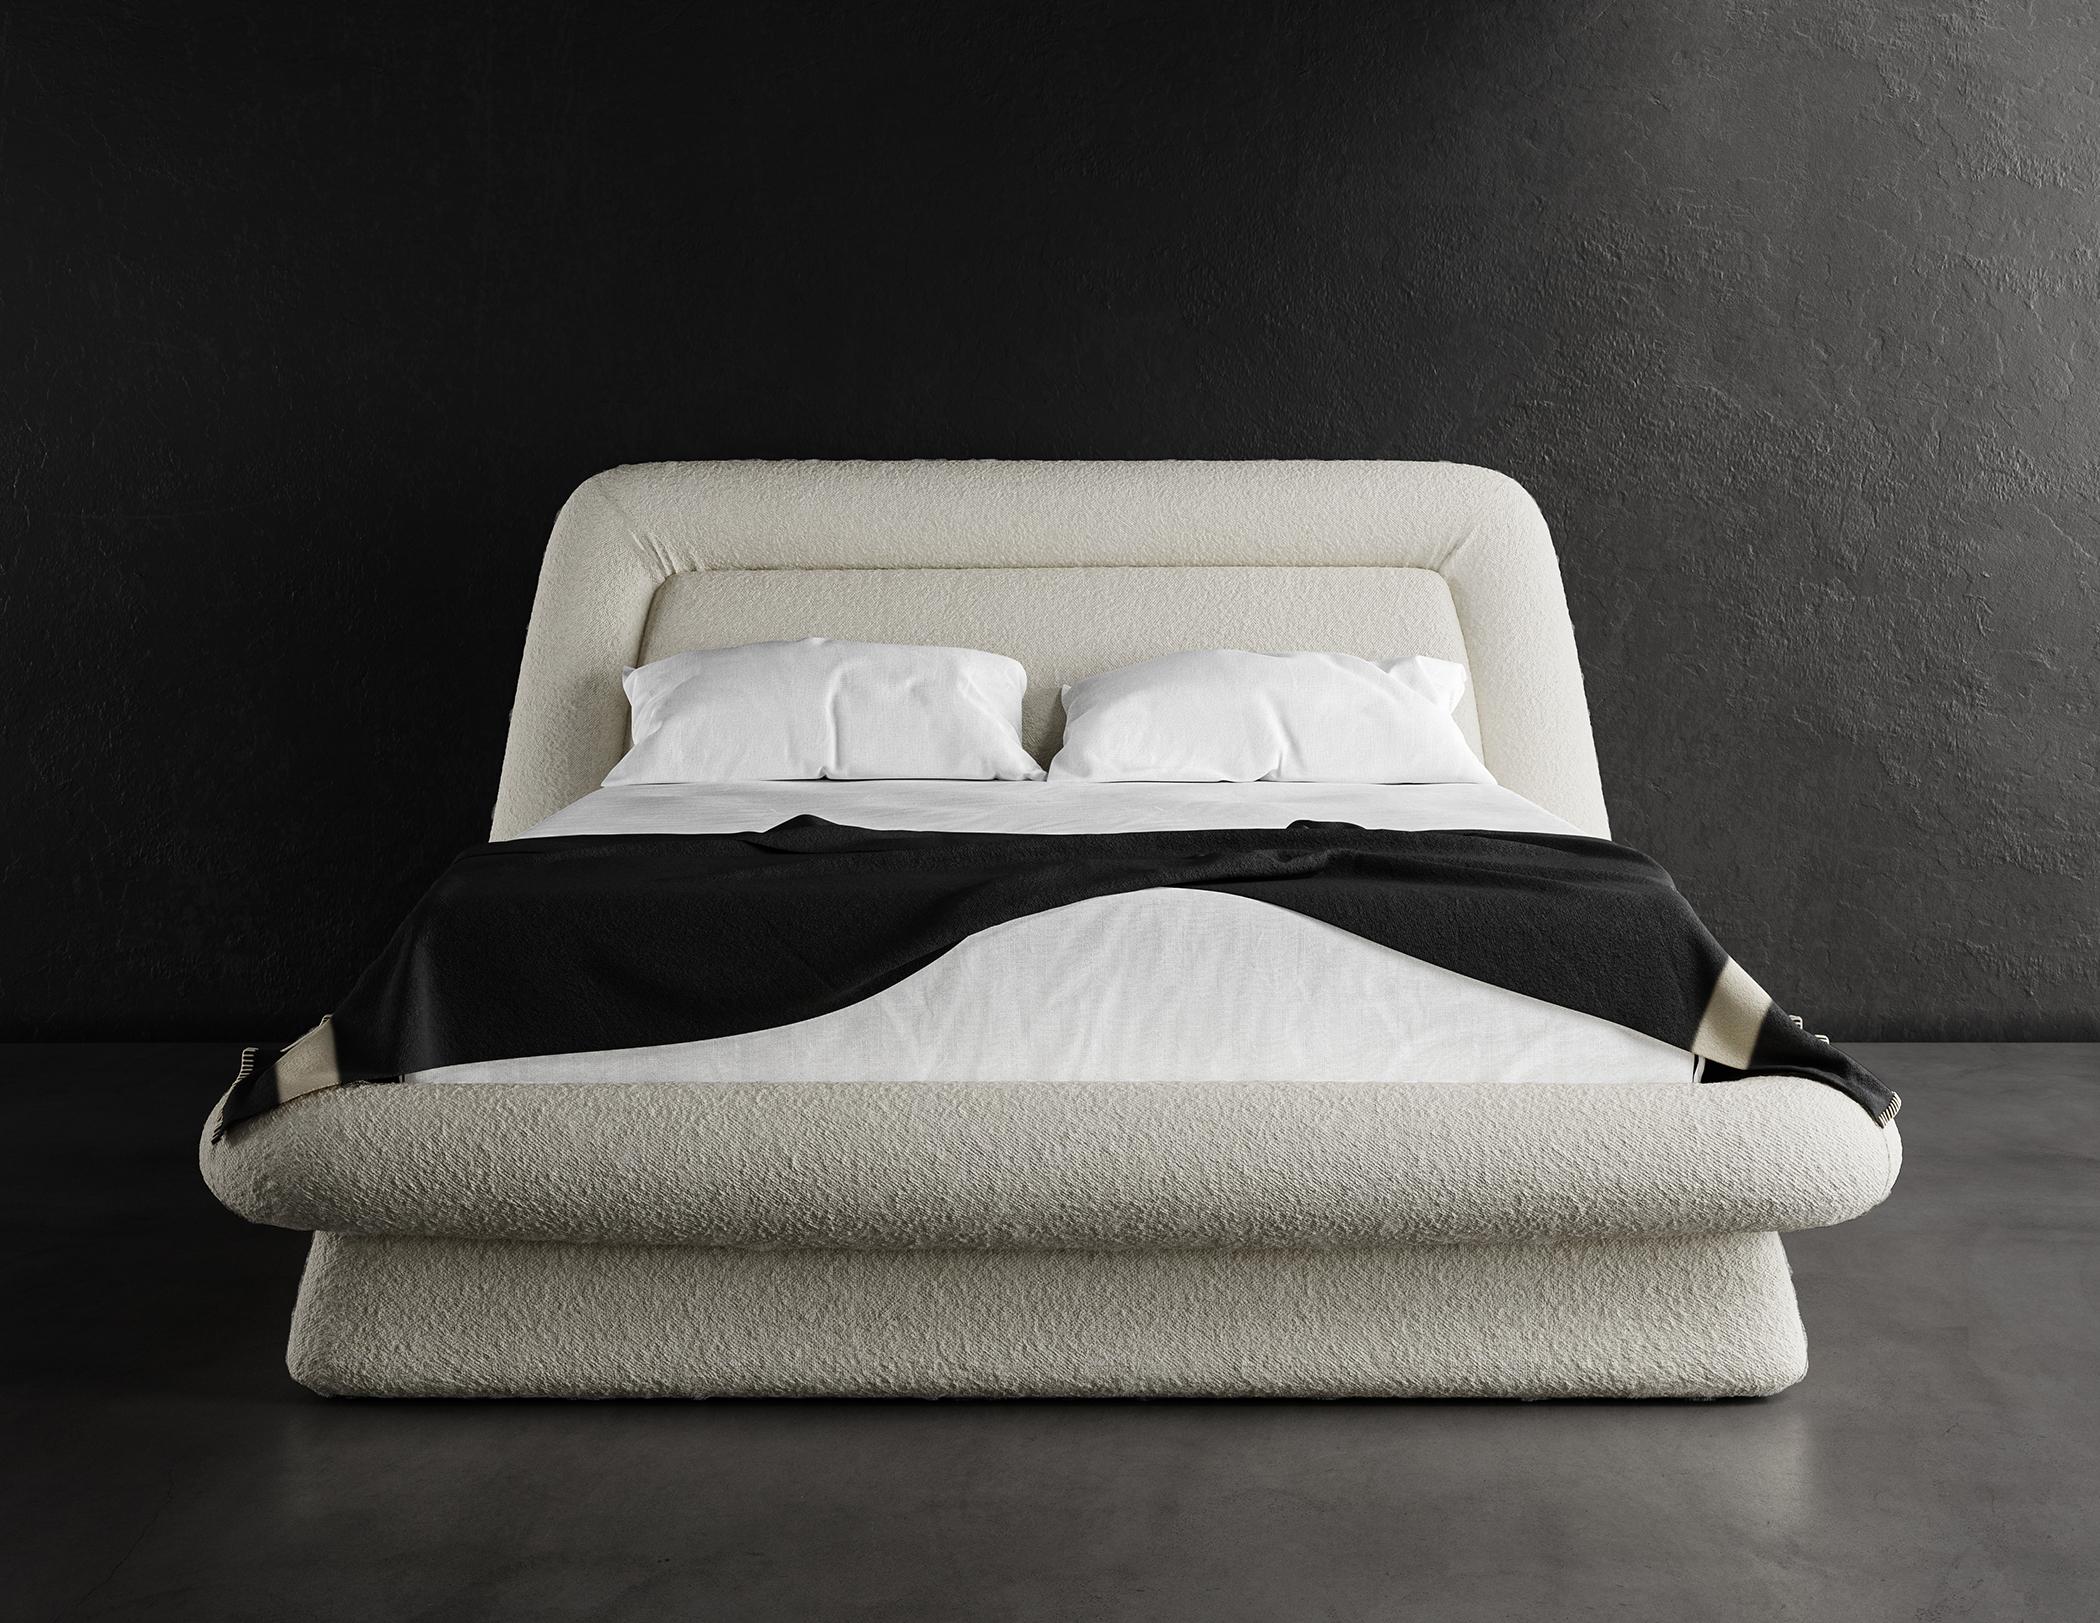 Das Wave Bed in Queen Size ist ein stilvoller und moderner Bettrahmen, der jedes moderne Schlafzimmer aufwertet. Er ist mit einem luxuriösen Cloud-Boucle-Stoff in einem warmen Weiß gepolstert, der dem Raum einen Hauch von Eleganz und Raffinesse